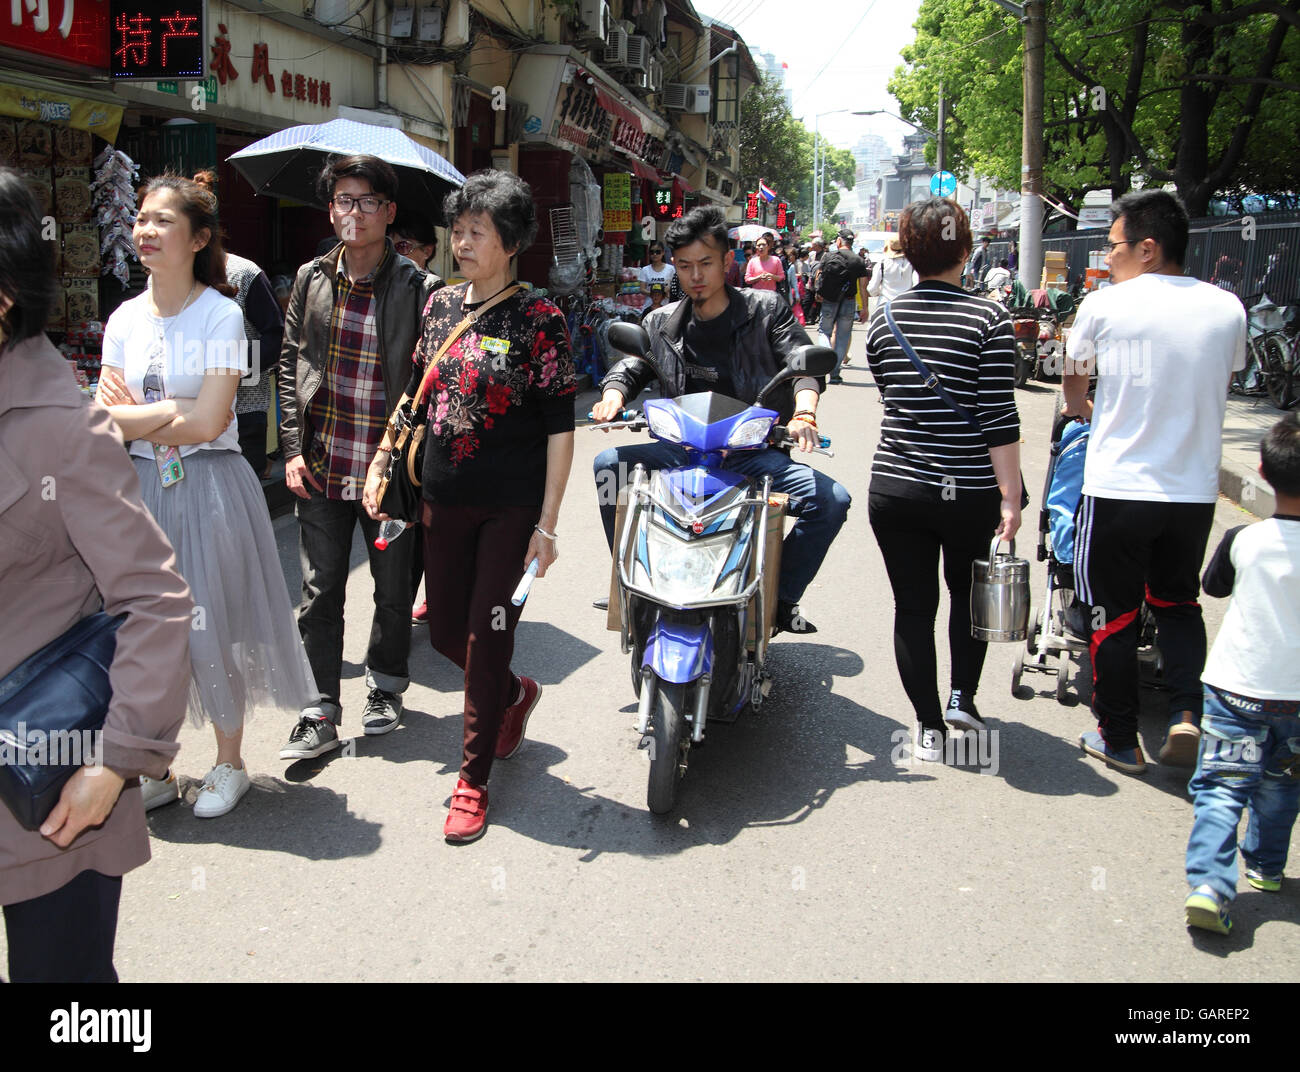 Ein chinesischer Mann reitet auf seinem Roller, rangieren in der Masse zwischen Fußgängern eine typische chinesische Straßenszene. Shanghai, China. 30.04.2016. Stockfoto